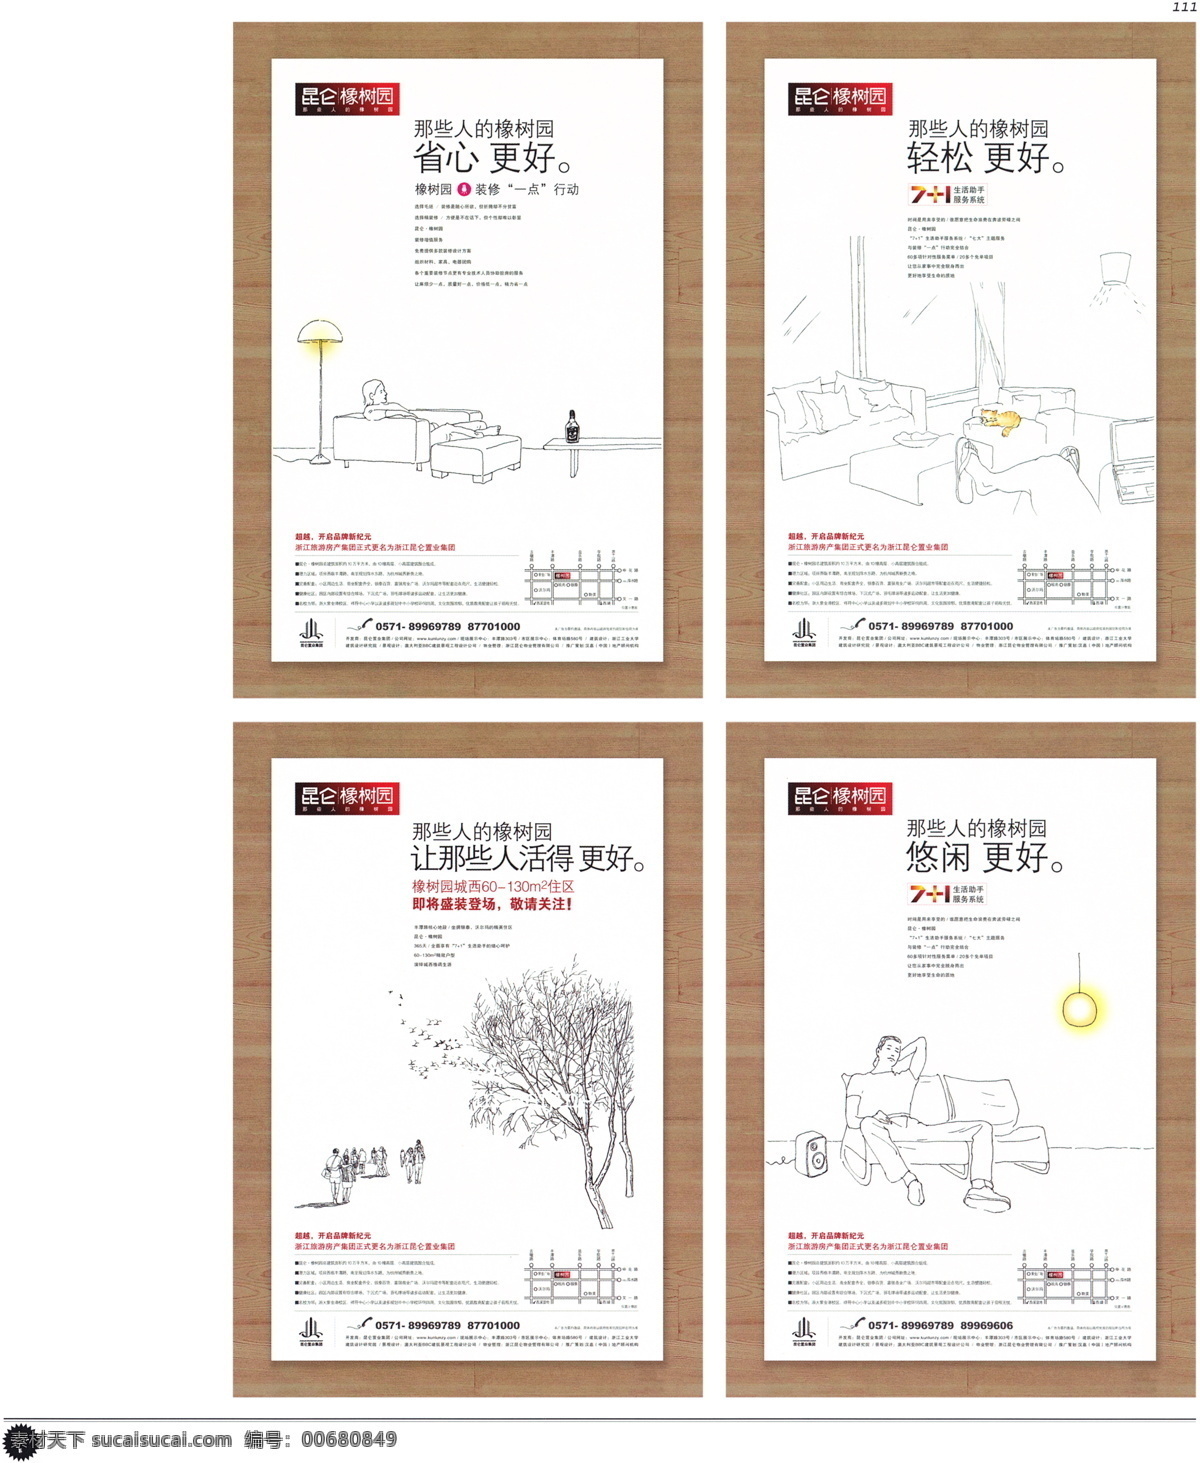 中国 房地产 广告 年鉴 第一册 创意设计 设计素材 房地产业 平面创意 平面设计 白色